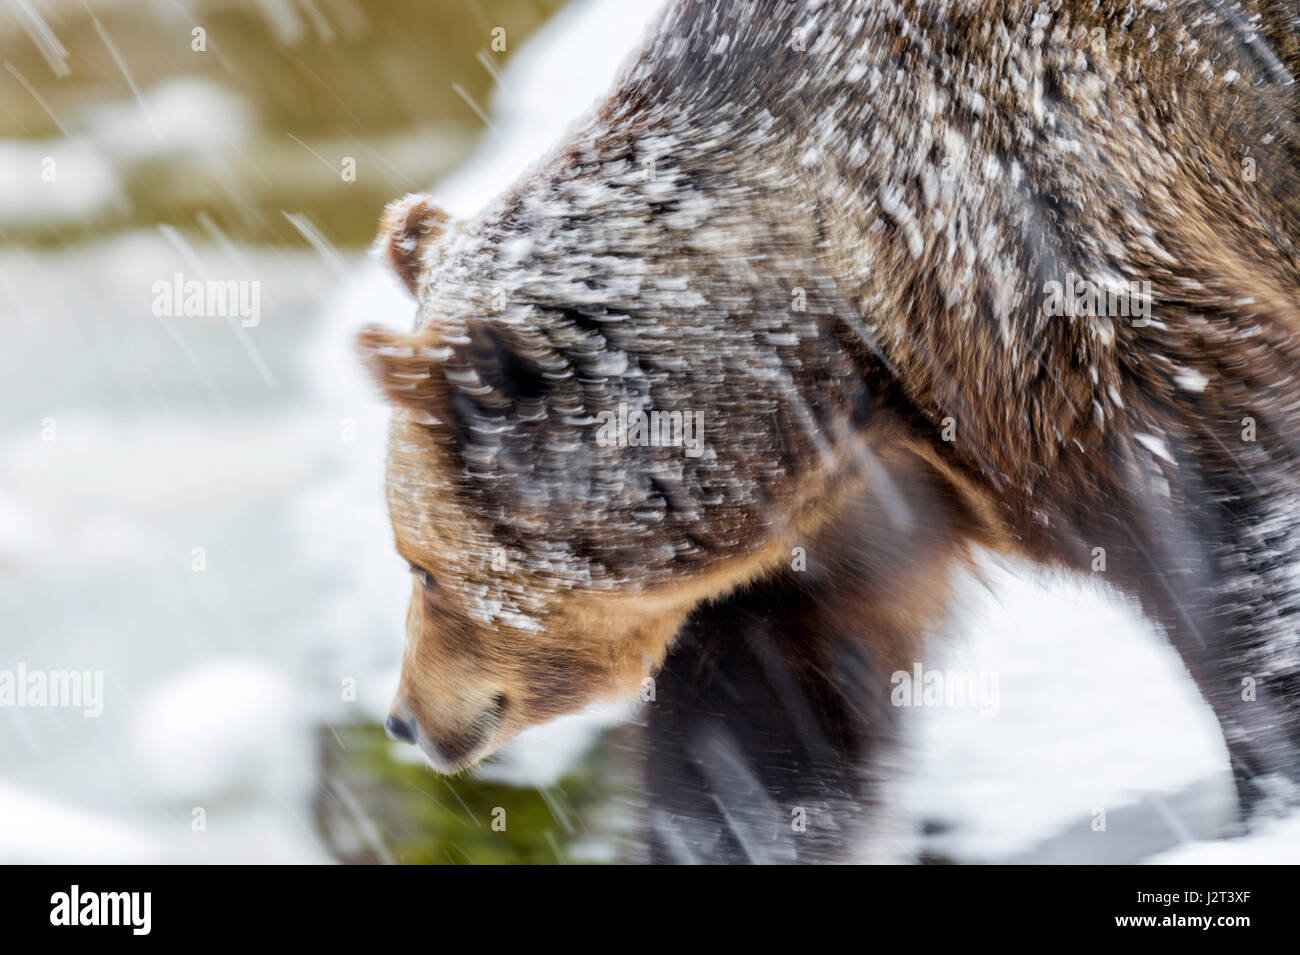 Solo para mujeres adultas Euroasiática de oso pardo (Ursus arctos) serpenteante en una tormenta de nieve de mediados de invierno. Foto de stock